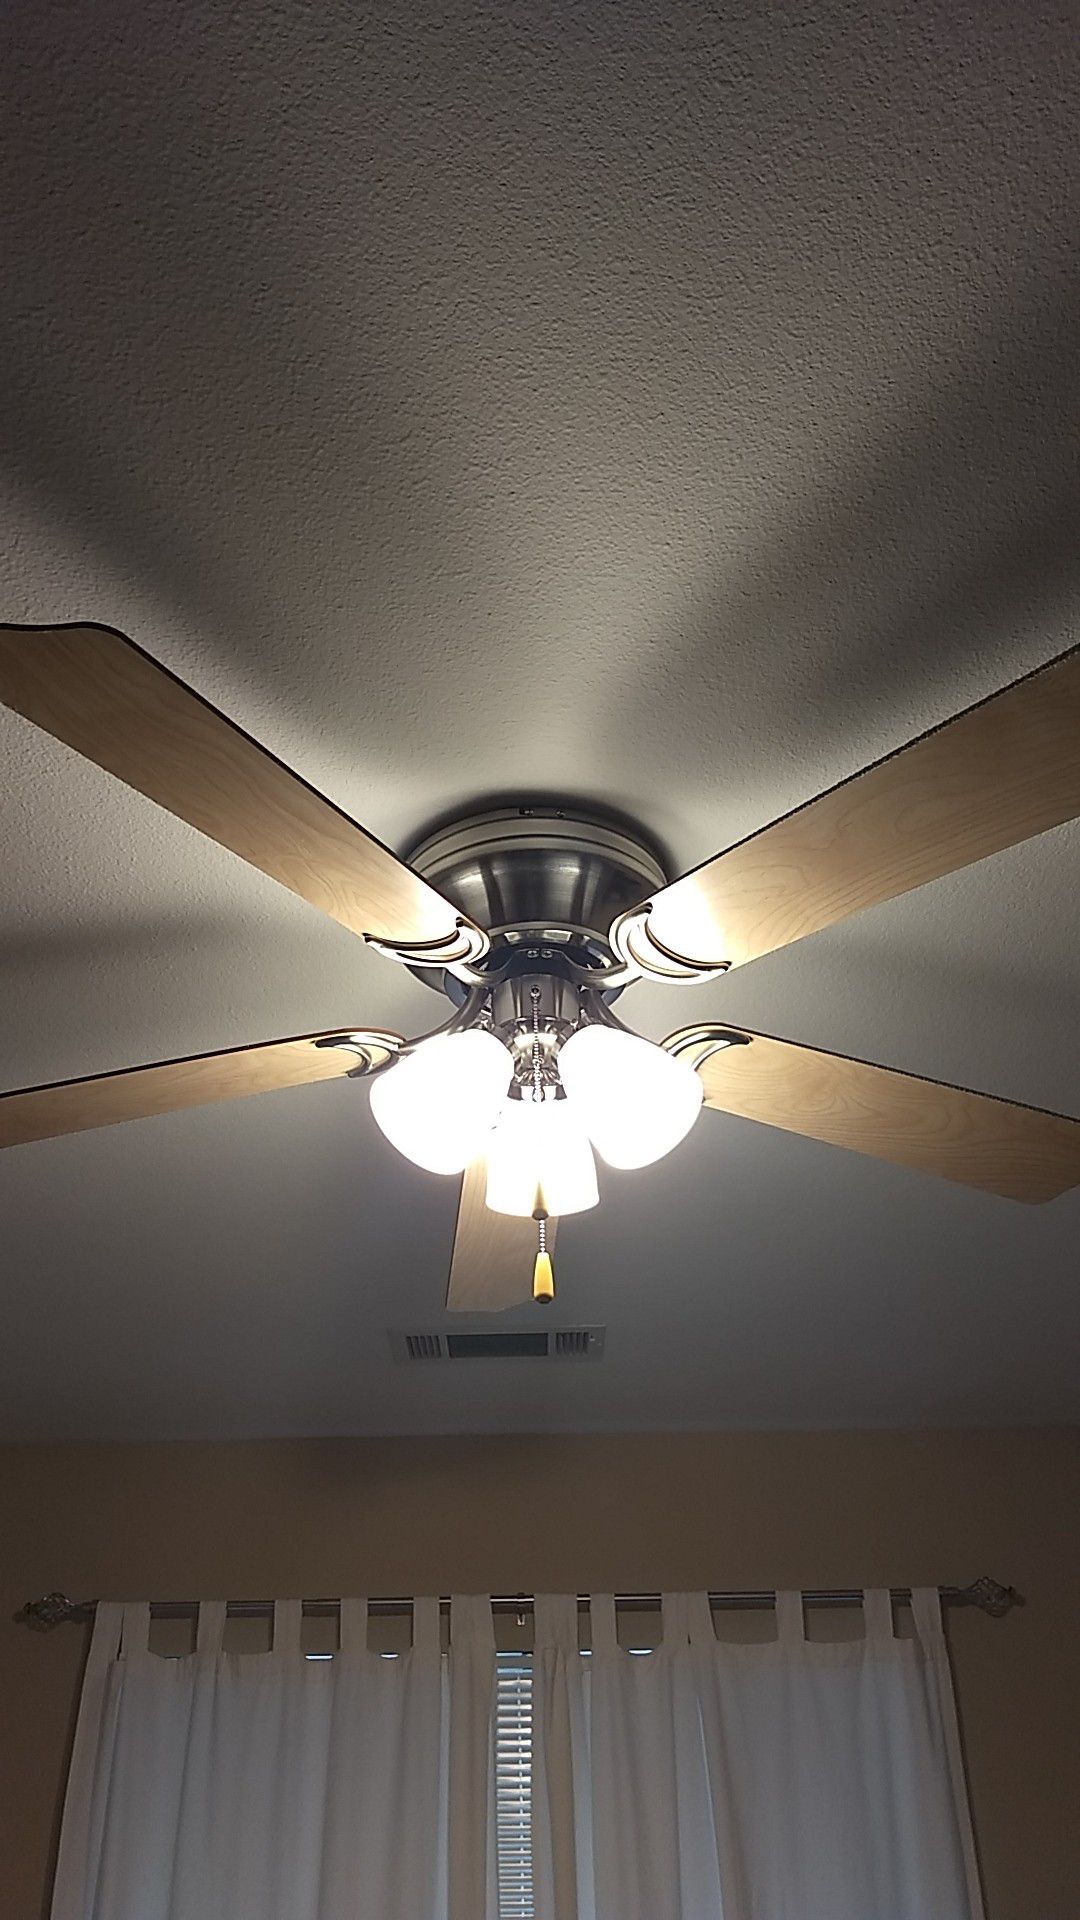 Ceiling fan and chandelier